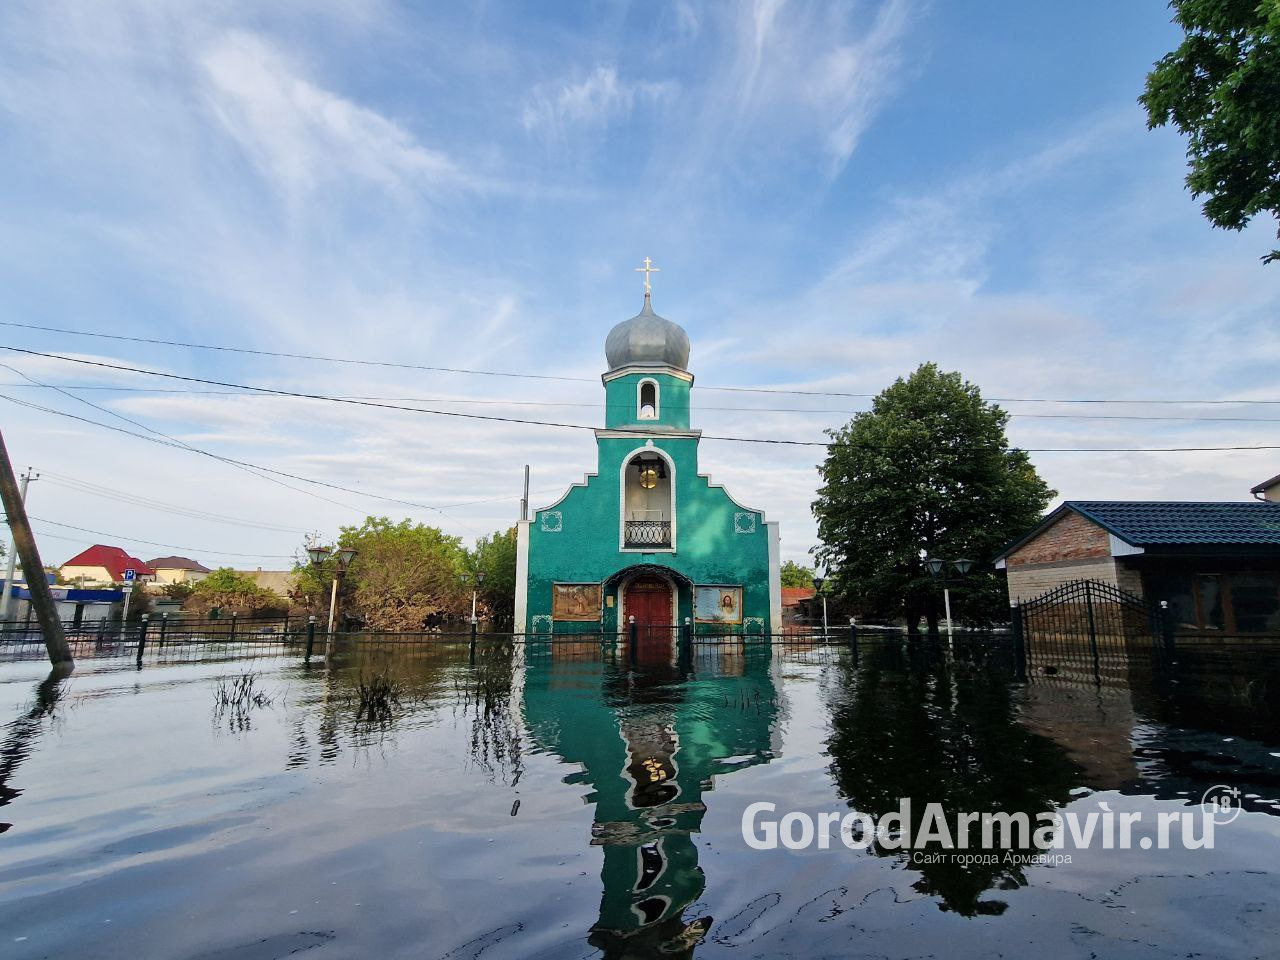 Епархия Армавира организовала сбор для помощи пострадавшим от наводнения в Херсонской области